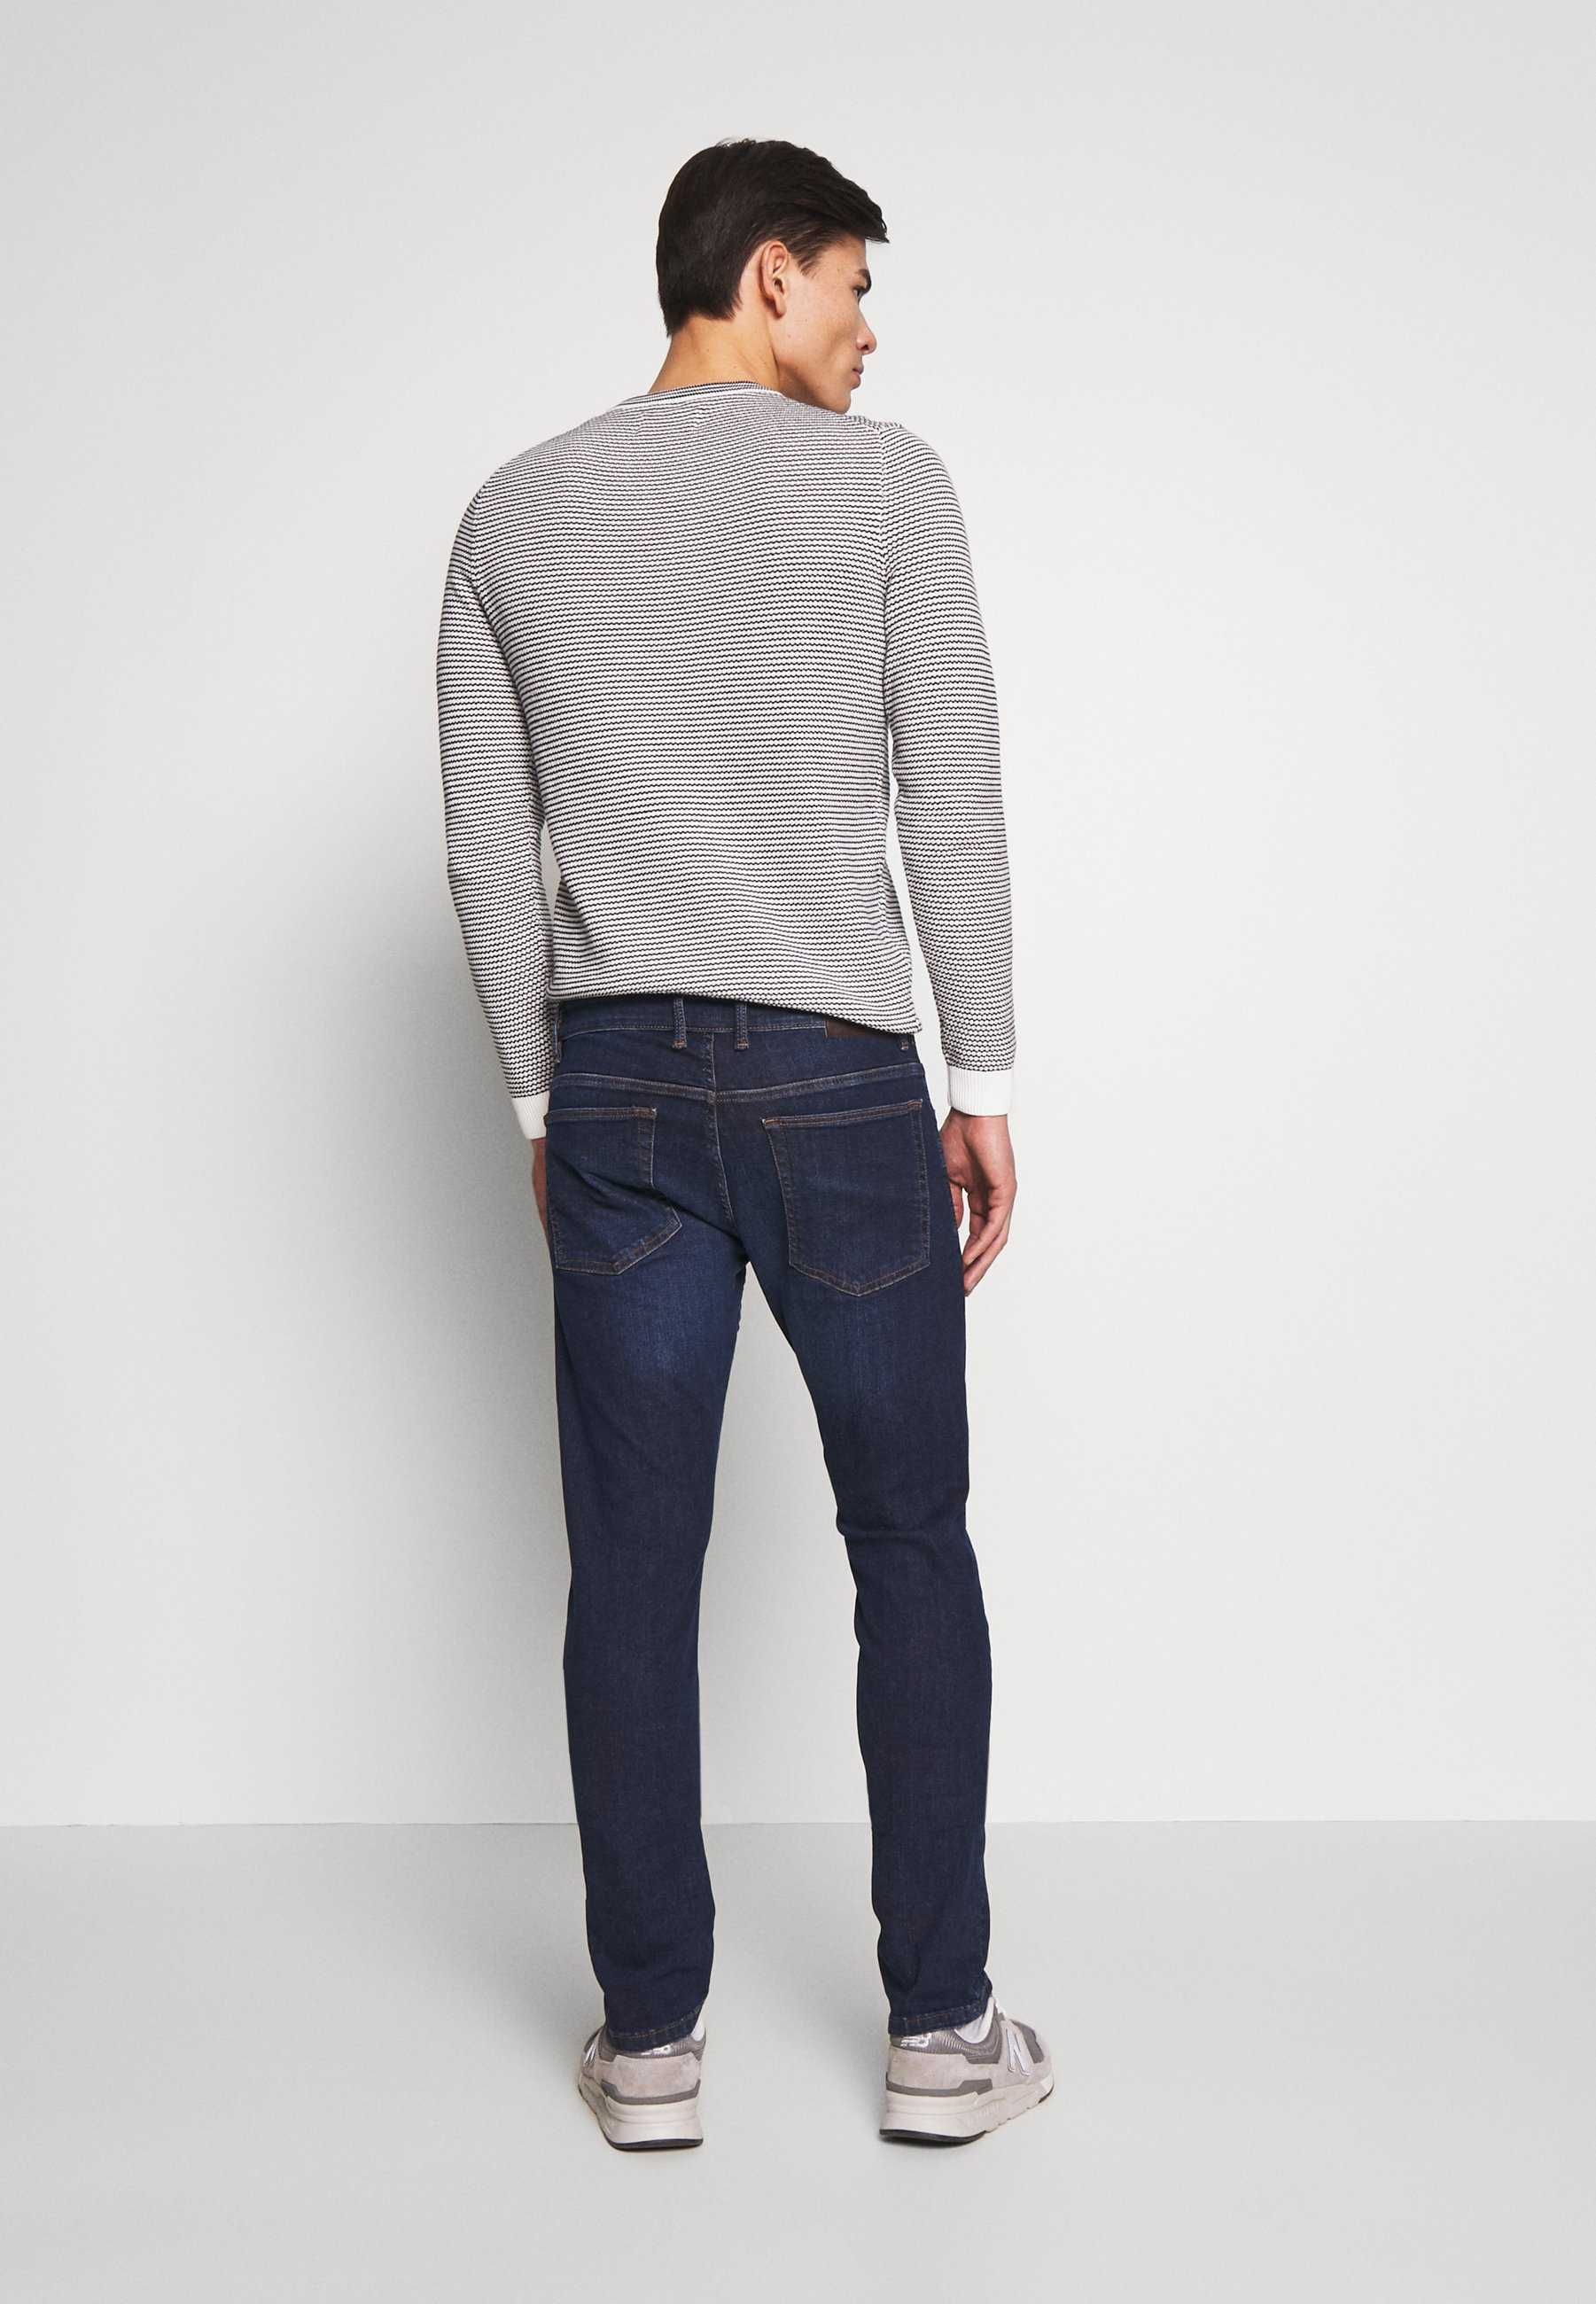 QS by s.Oliver Jeansy Slim Fit dark-blue denim spodnie jeansowe dżinsy